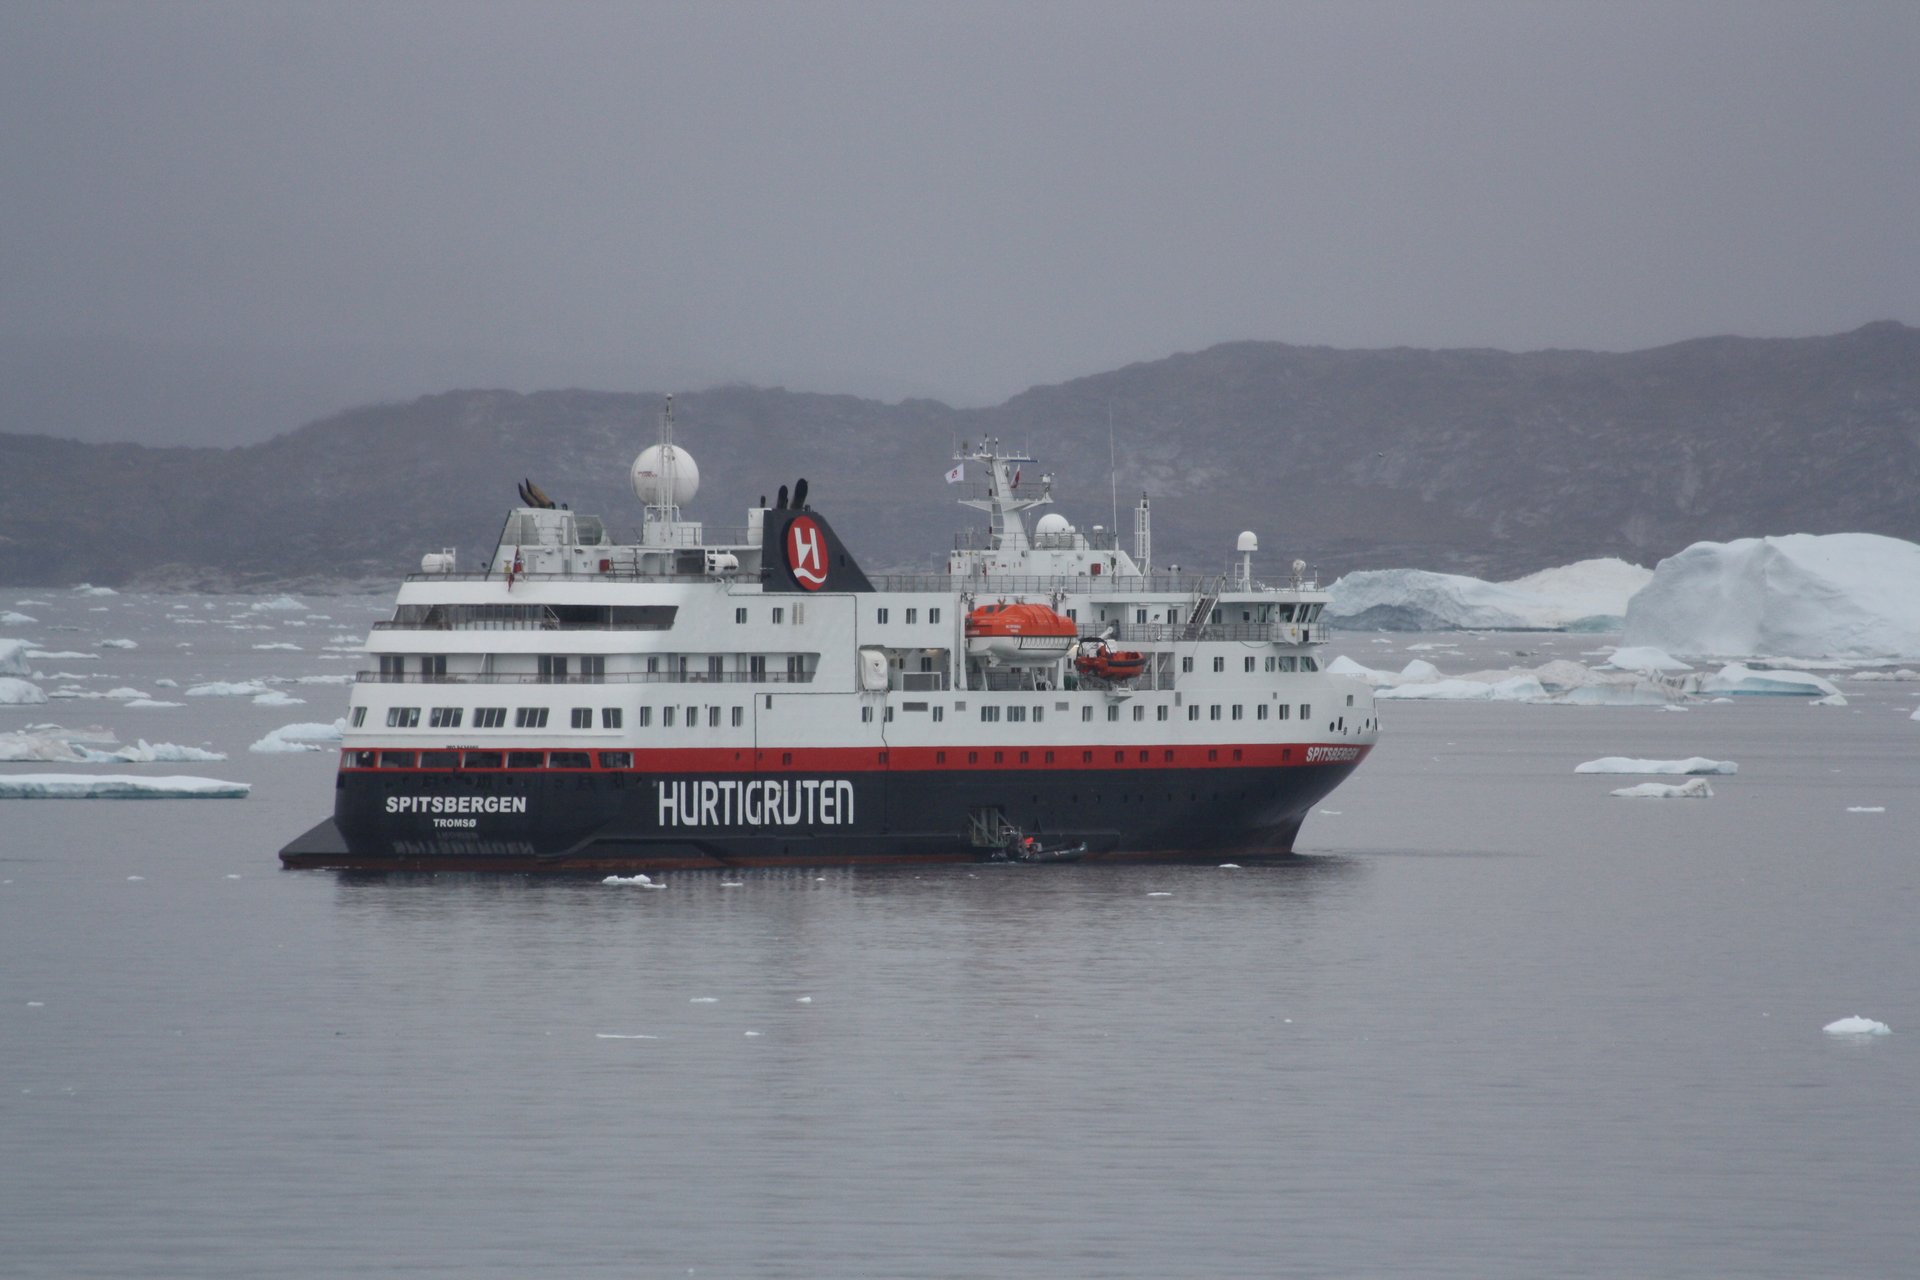 Hurtigrutenschiff MS Spitsbergen